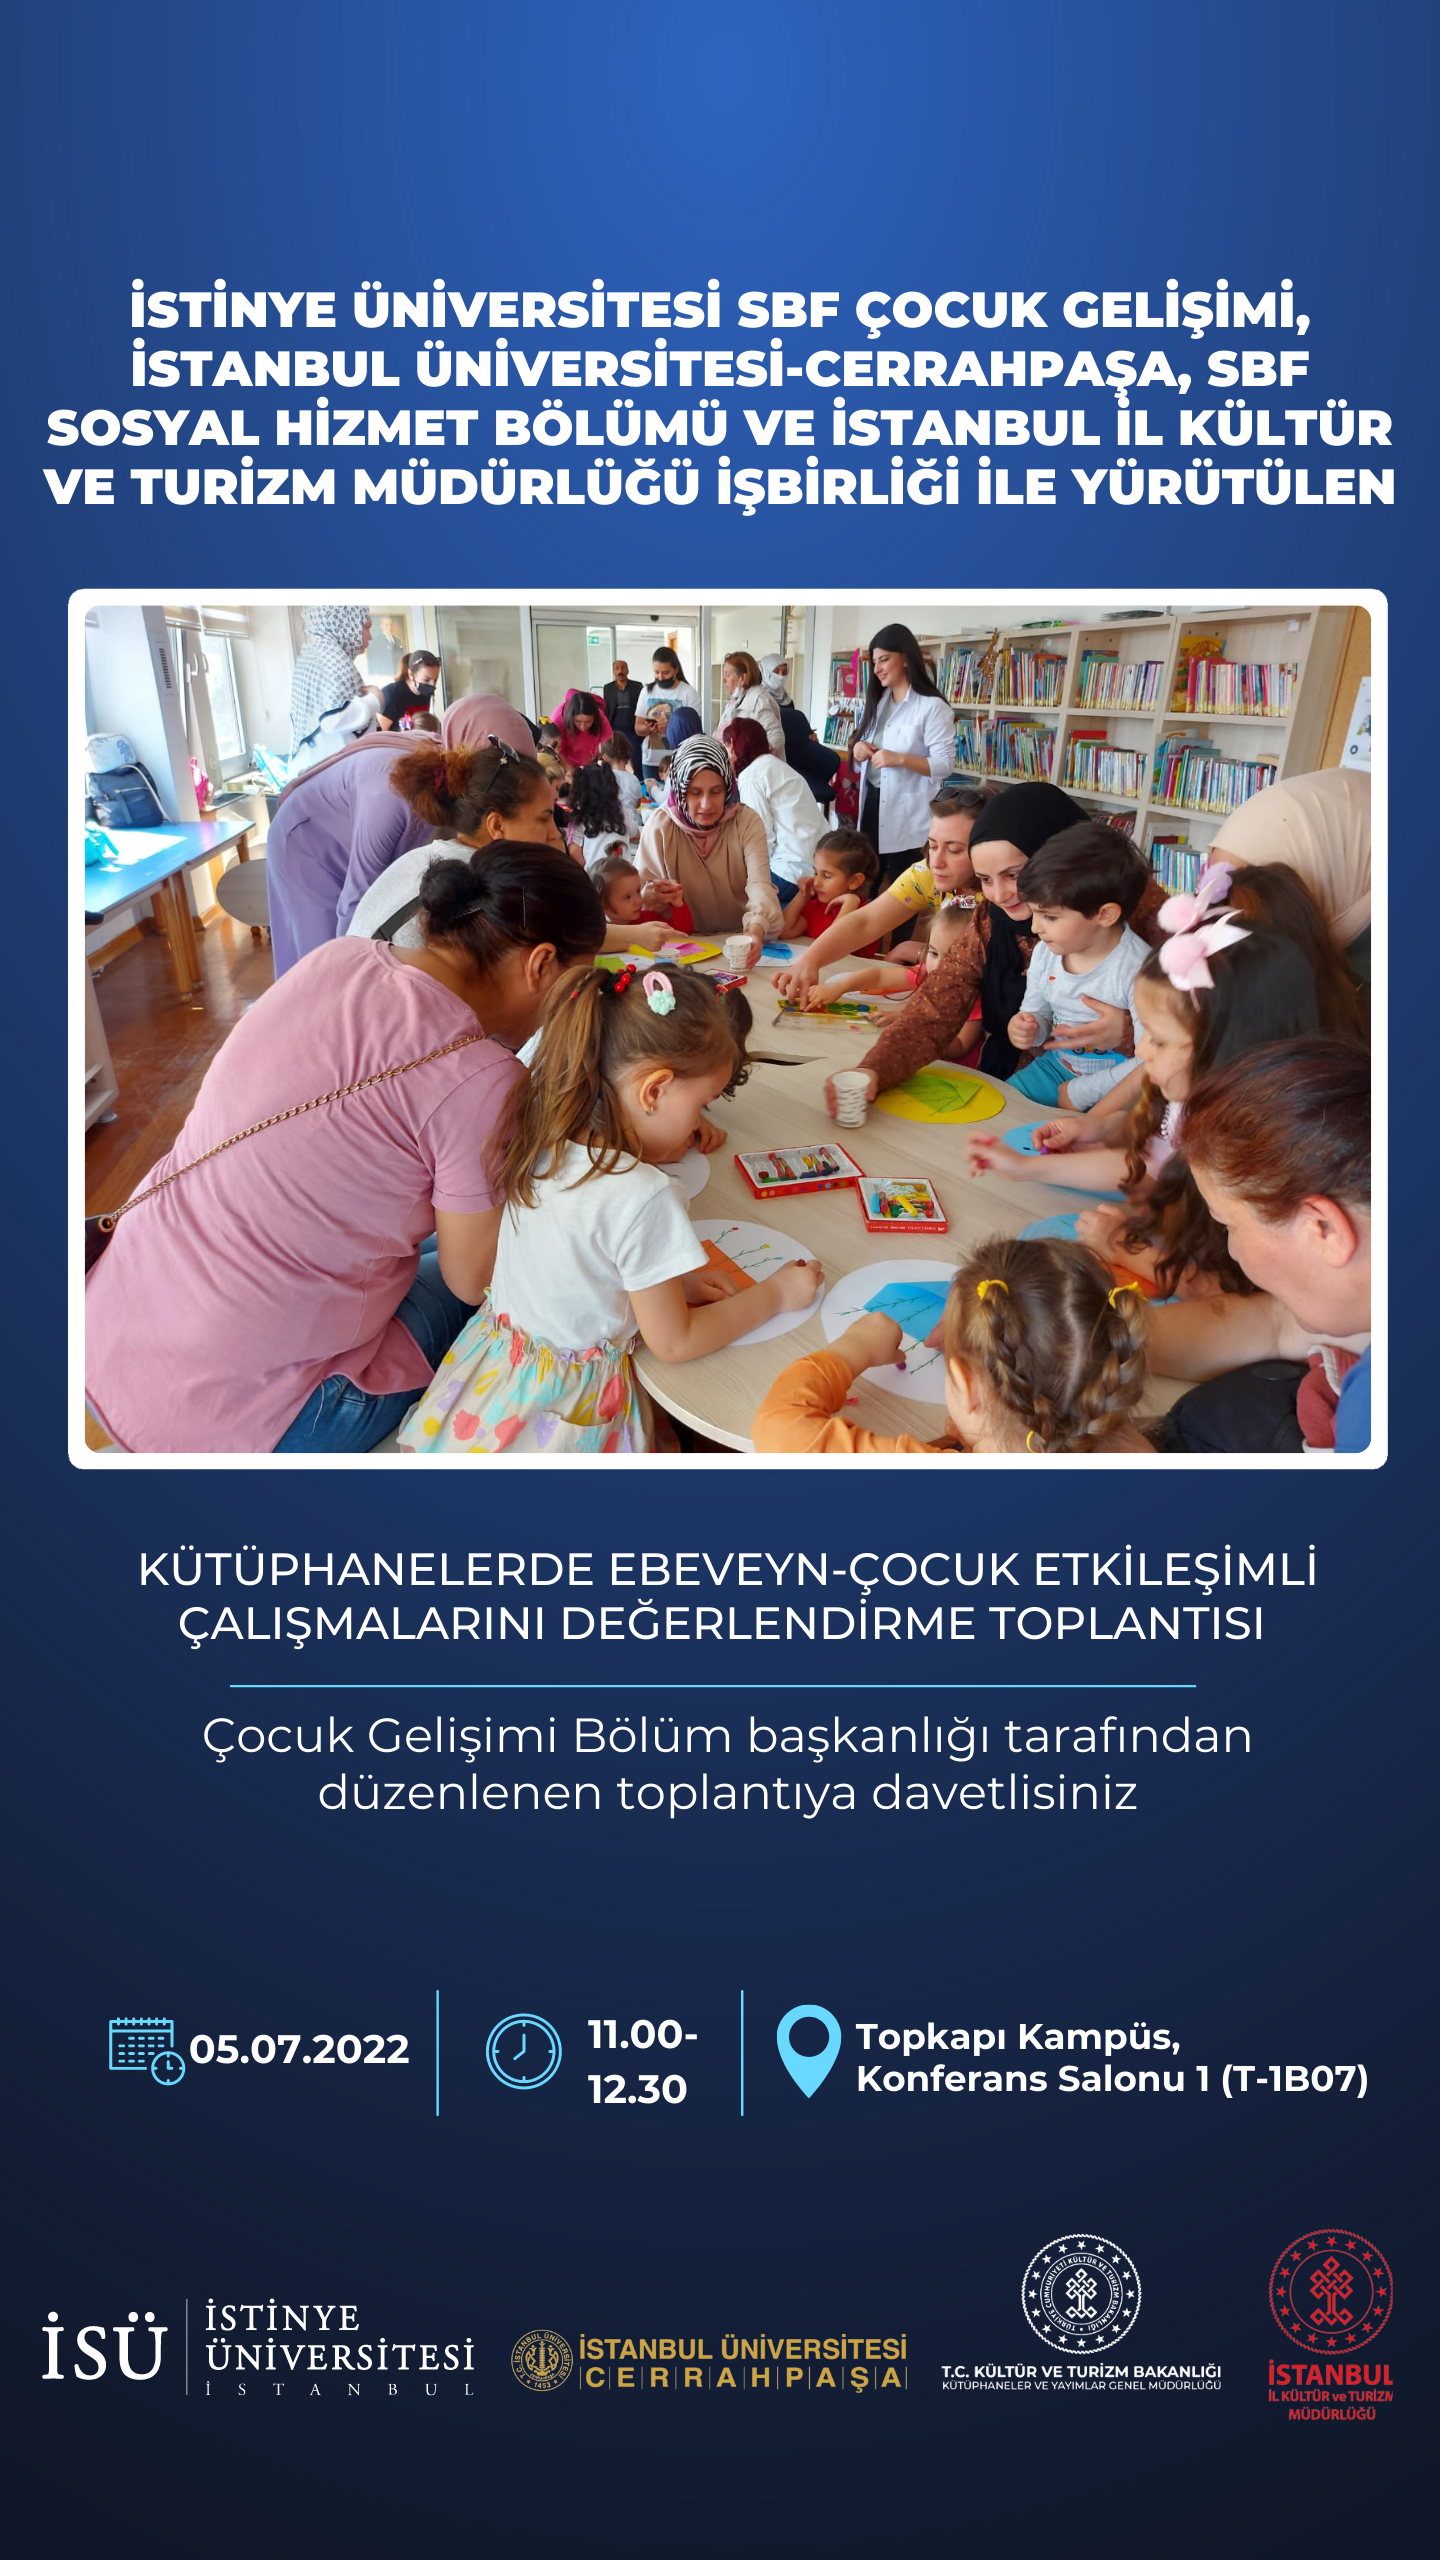 Kütüphanelerde Ebeveyn-Çocuk Etkileşimli Çalışmalarını Değerlendirme Toplantısı